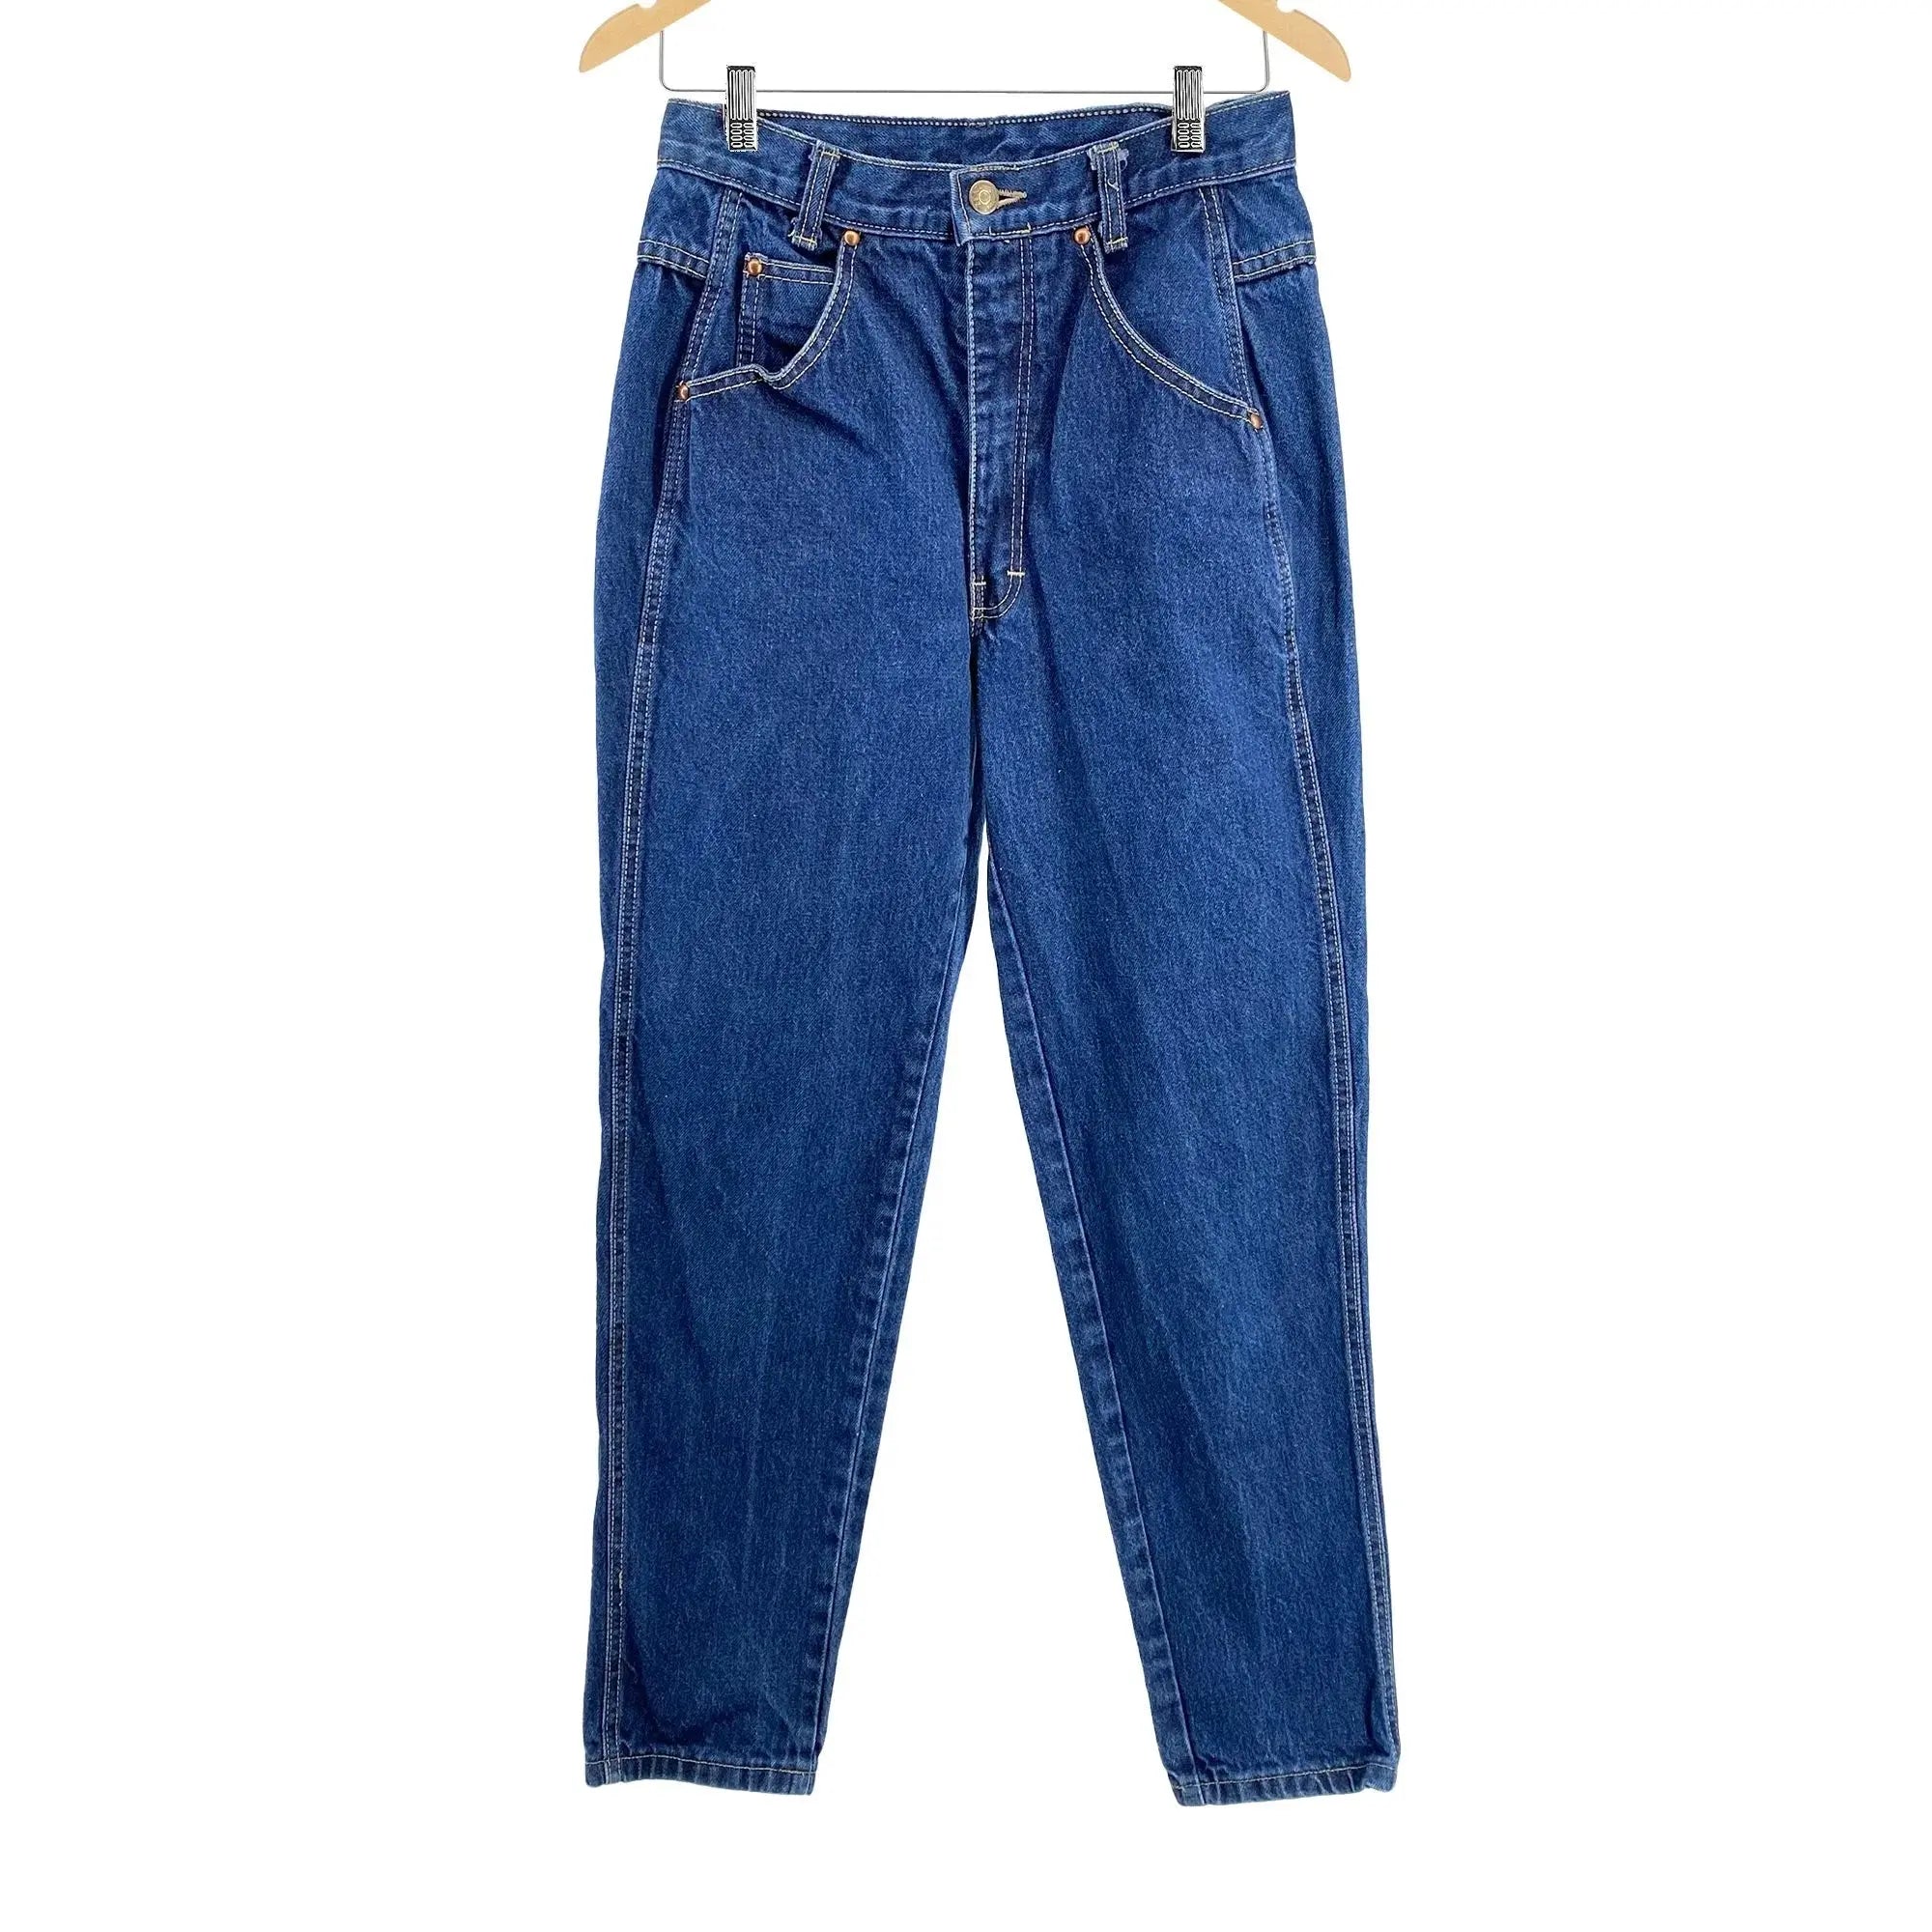 Vintage 80s Zena Comfort Jeans - Women's/Junior's 9 Great Lakes Reclaimed Denim